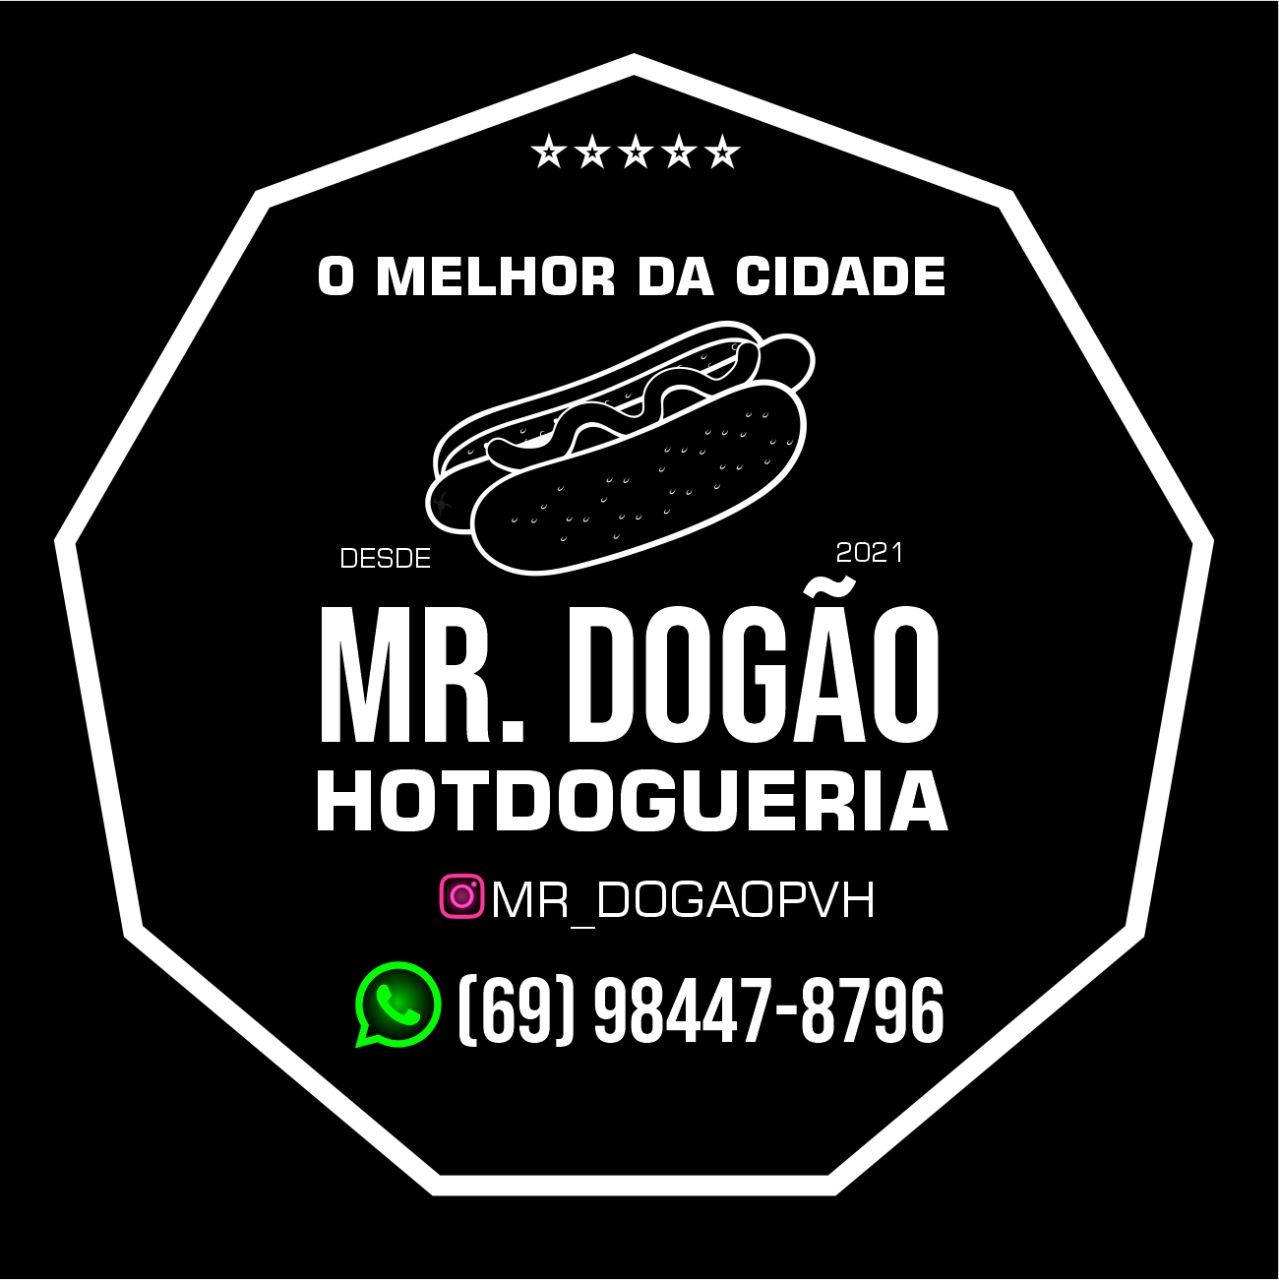 Dogão food Hotdogueria